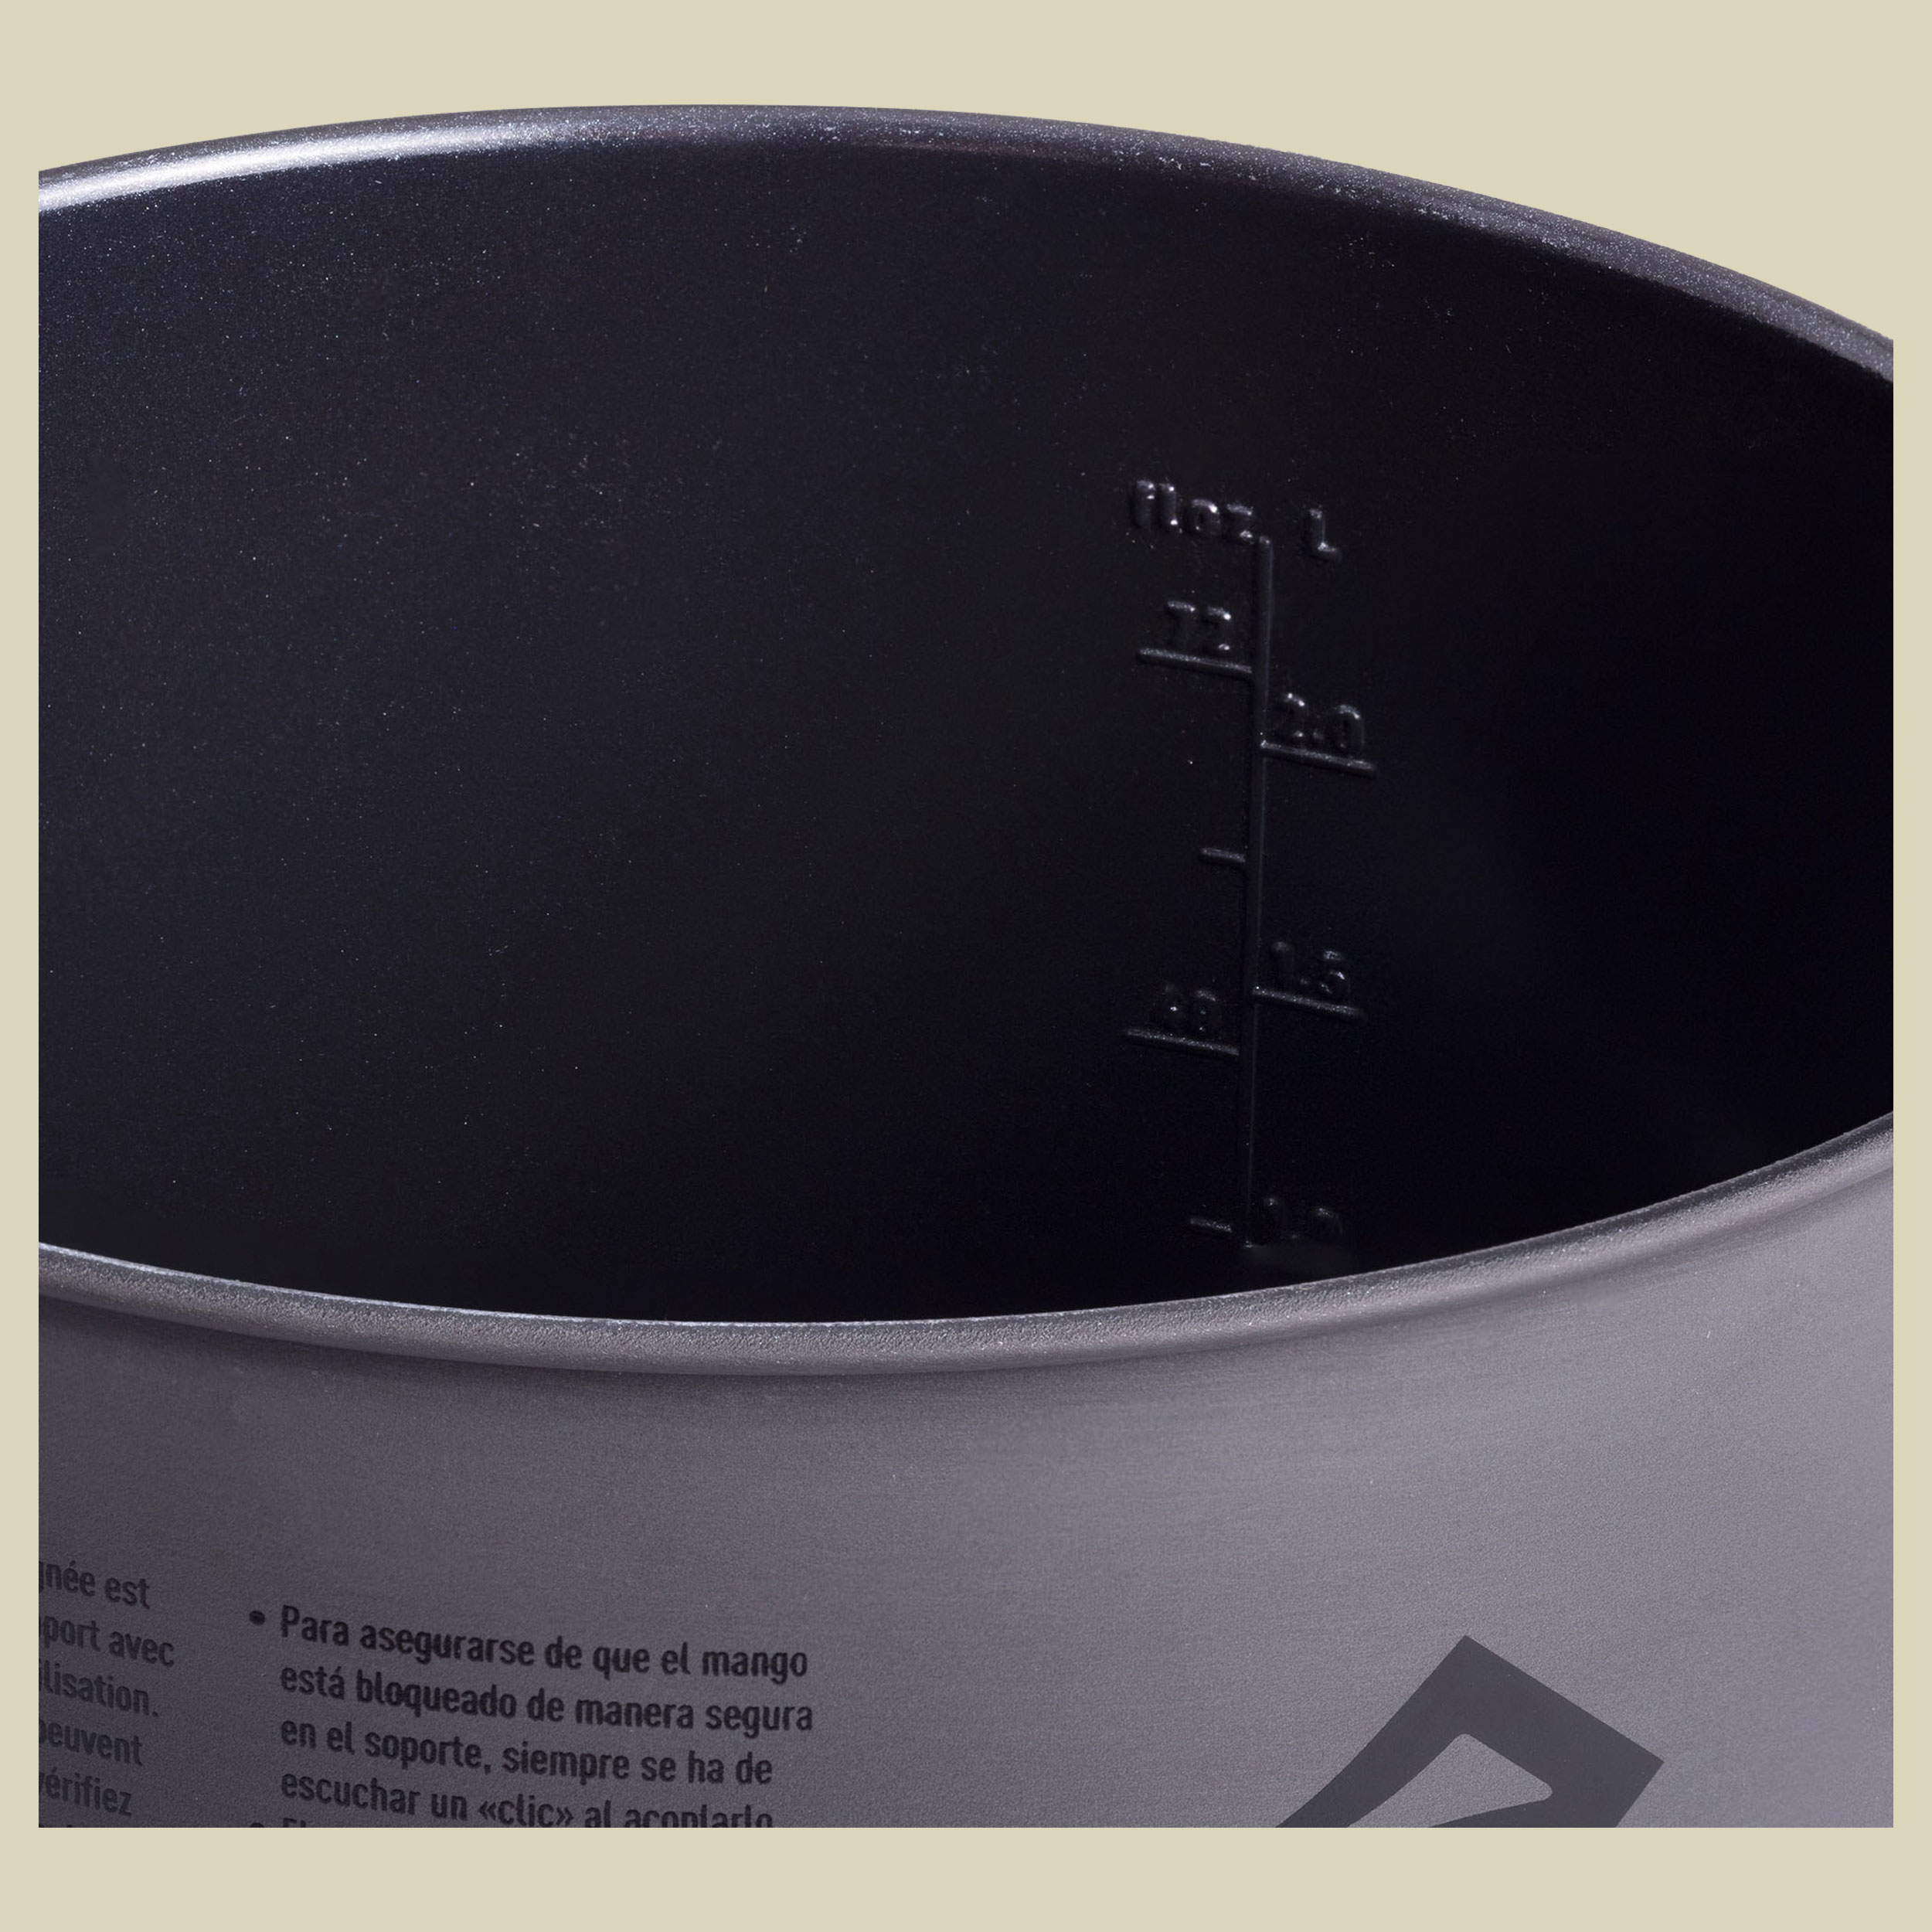 Frontier UL Pot 1.3L grau - aluminium hard anodised grey 